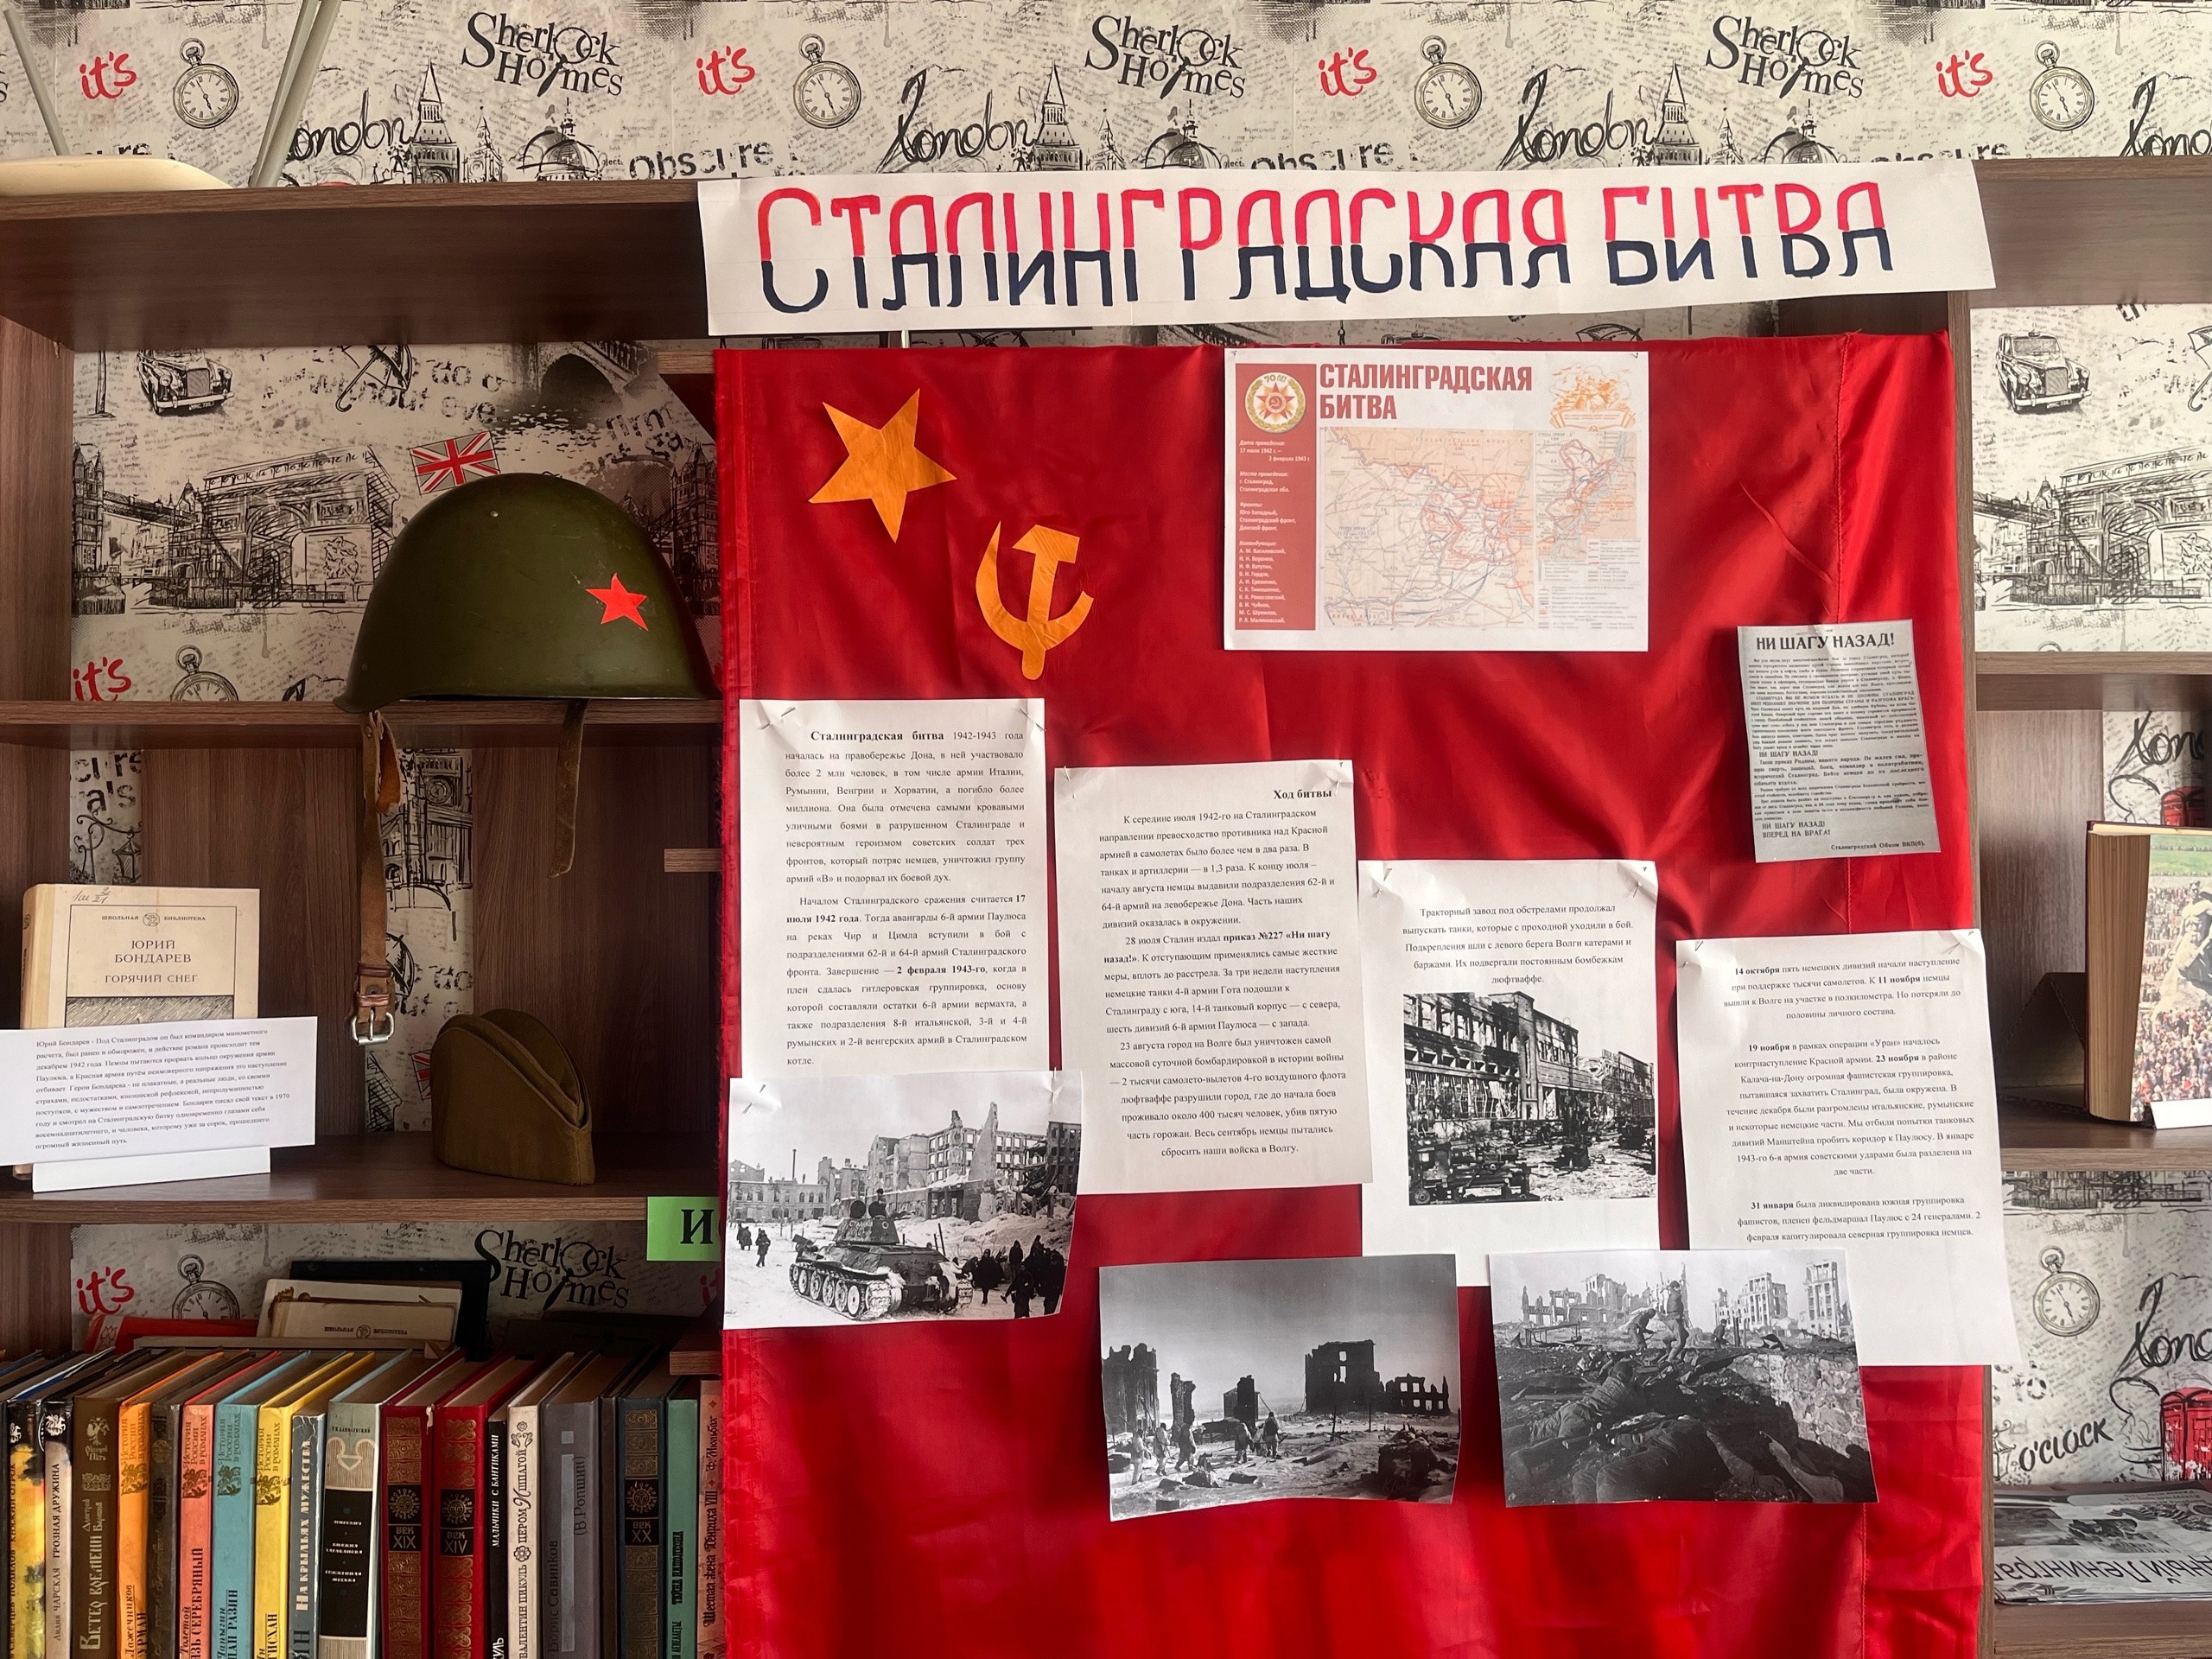 81-я годовщина Сталинградской битвы.